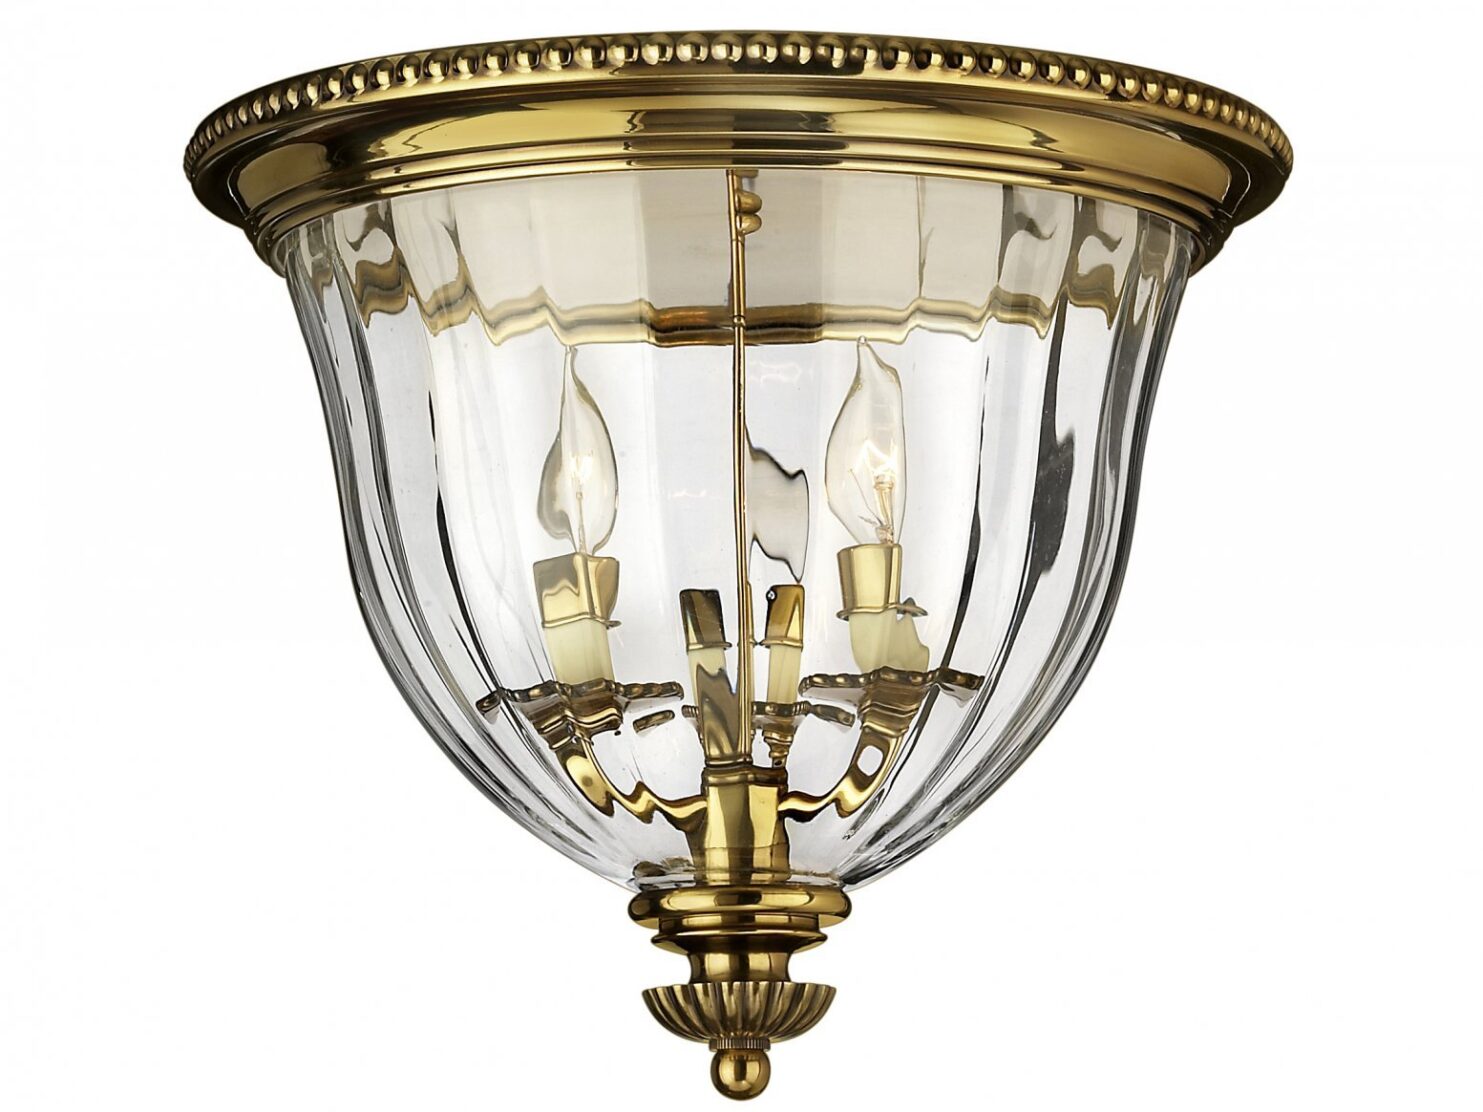 Lampa sufitowa plafon ręcznie wykonana w odcieniu oksydowanego mosiądzu w klasycznym stylu